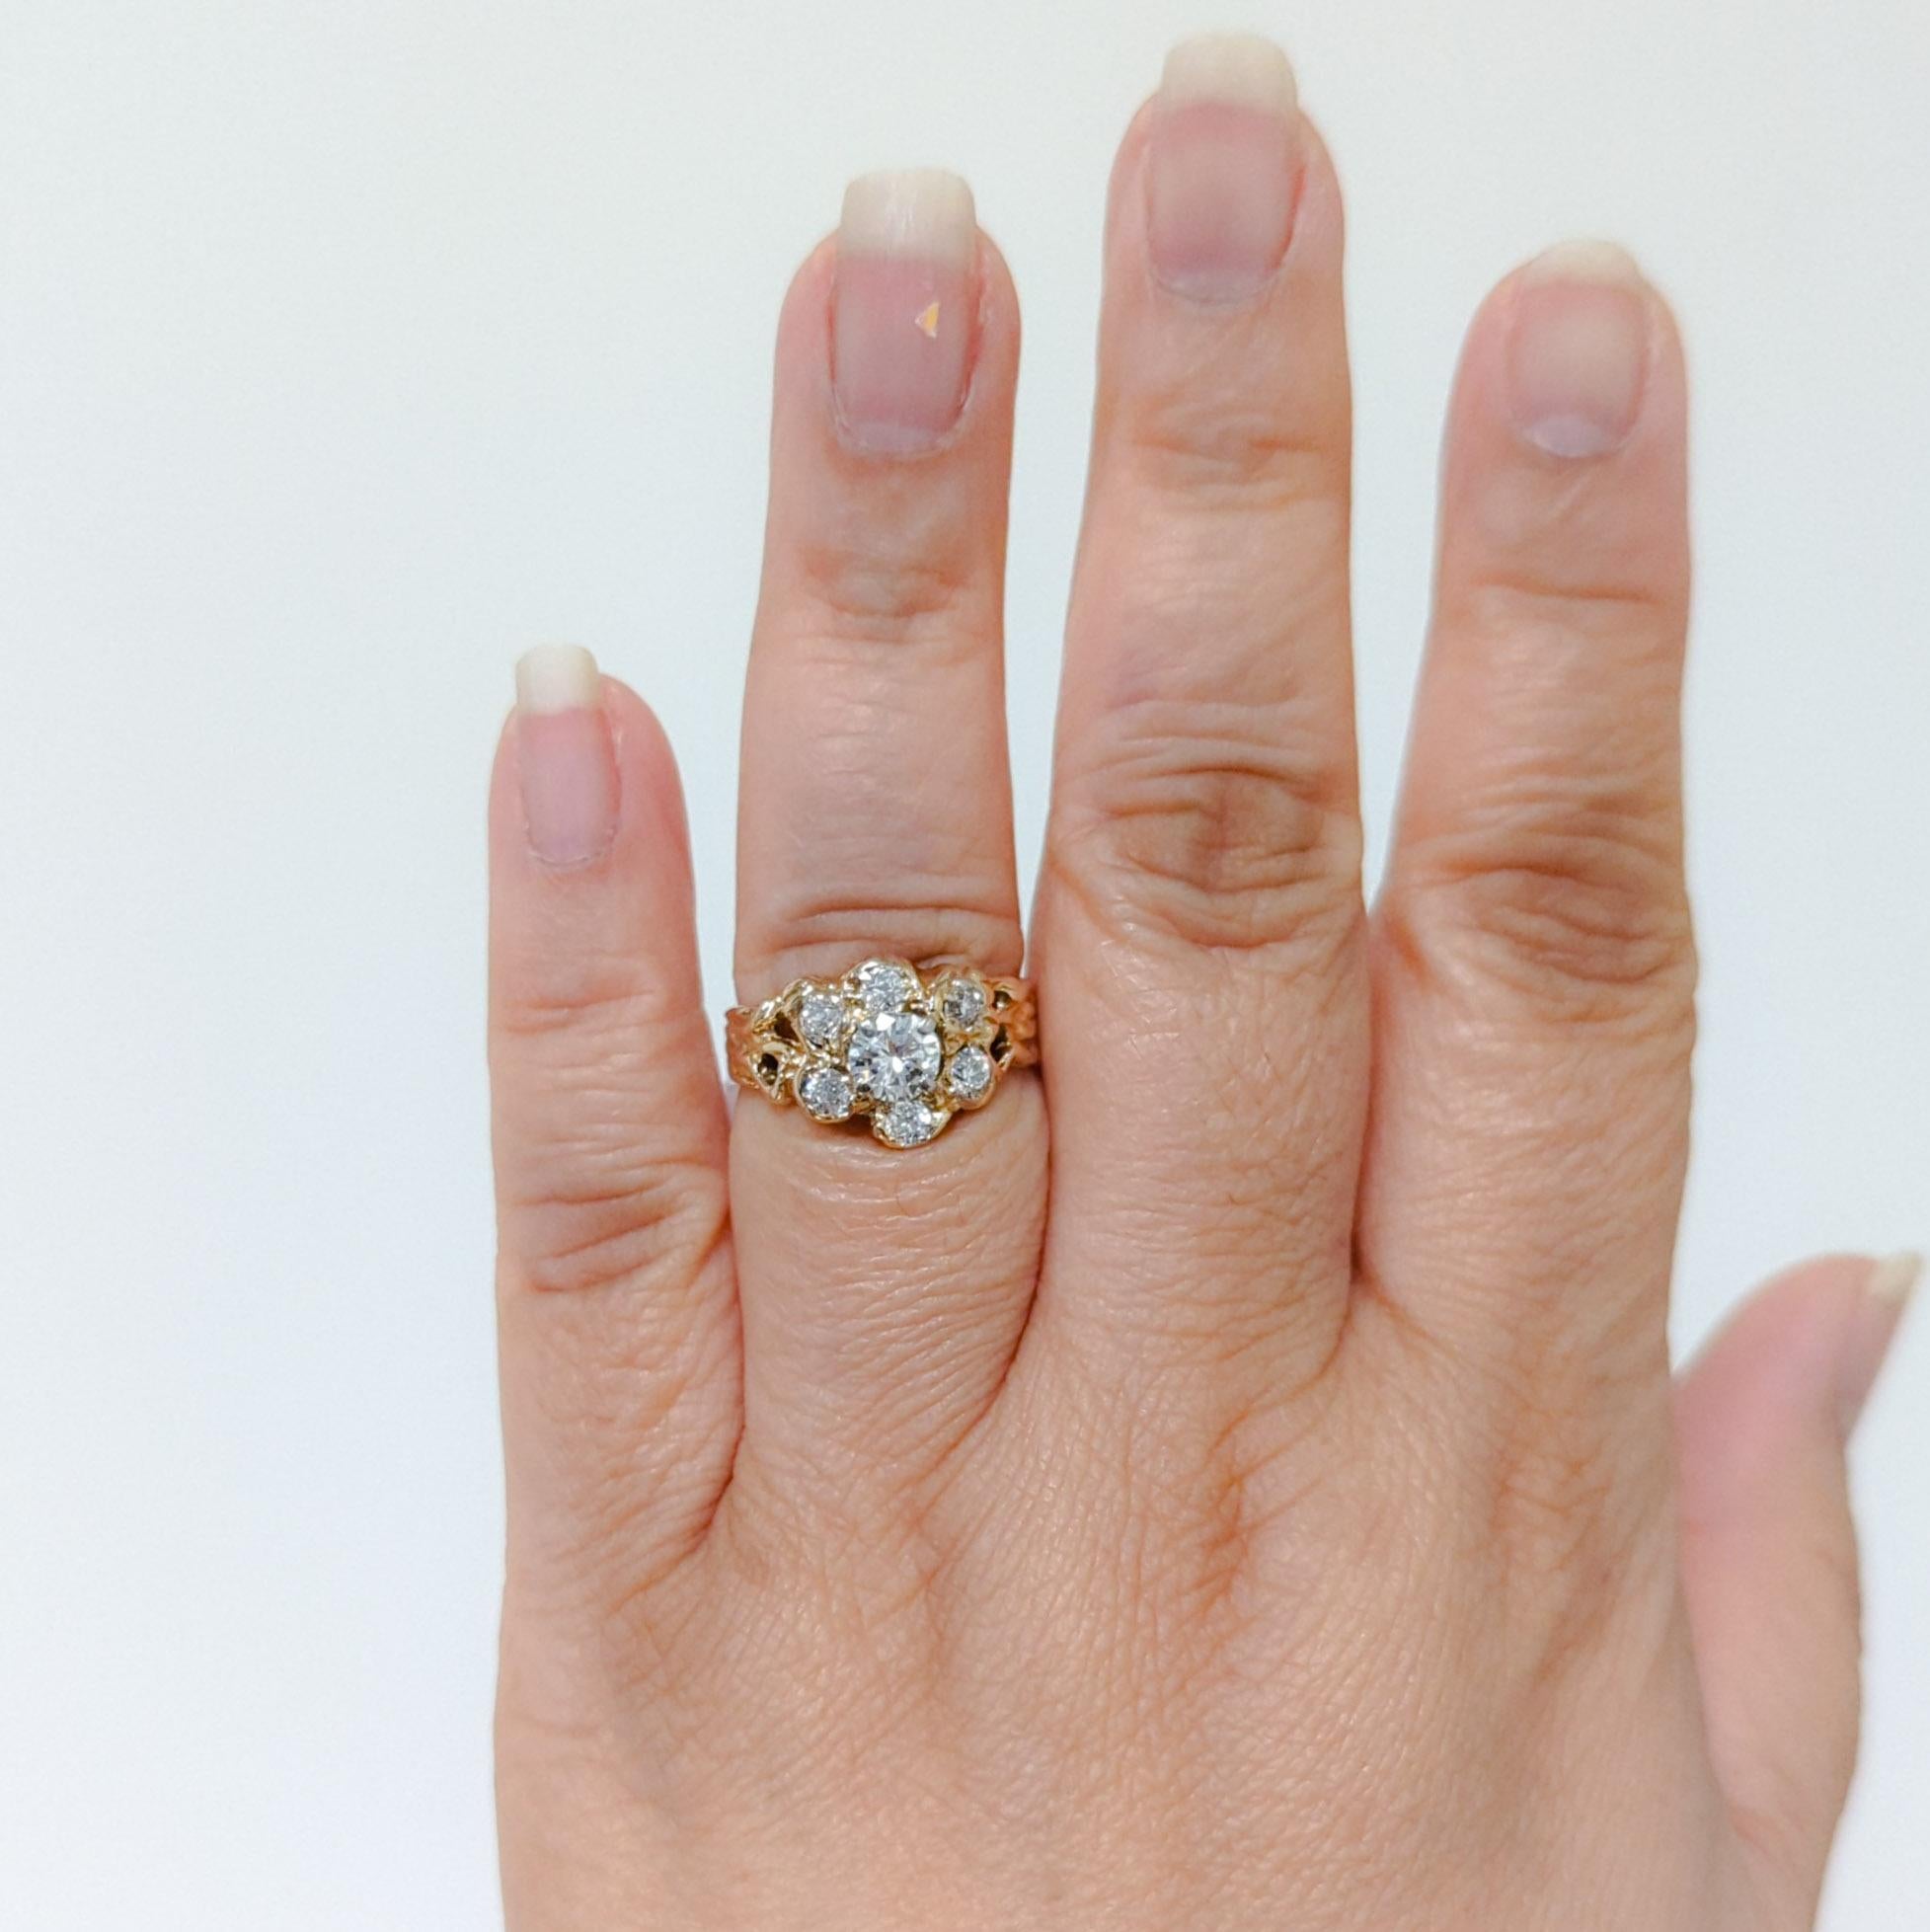 Magnifiques diamants blancs ronds de 0,85 ct. dessinés en forme de fleur.  Total de 7 pierres.  Fabriqué à la main en or jaune 14k.  Bague taille 8.5.